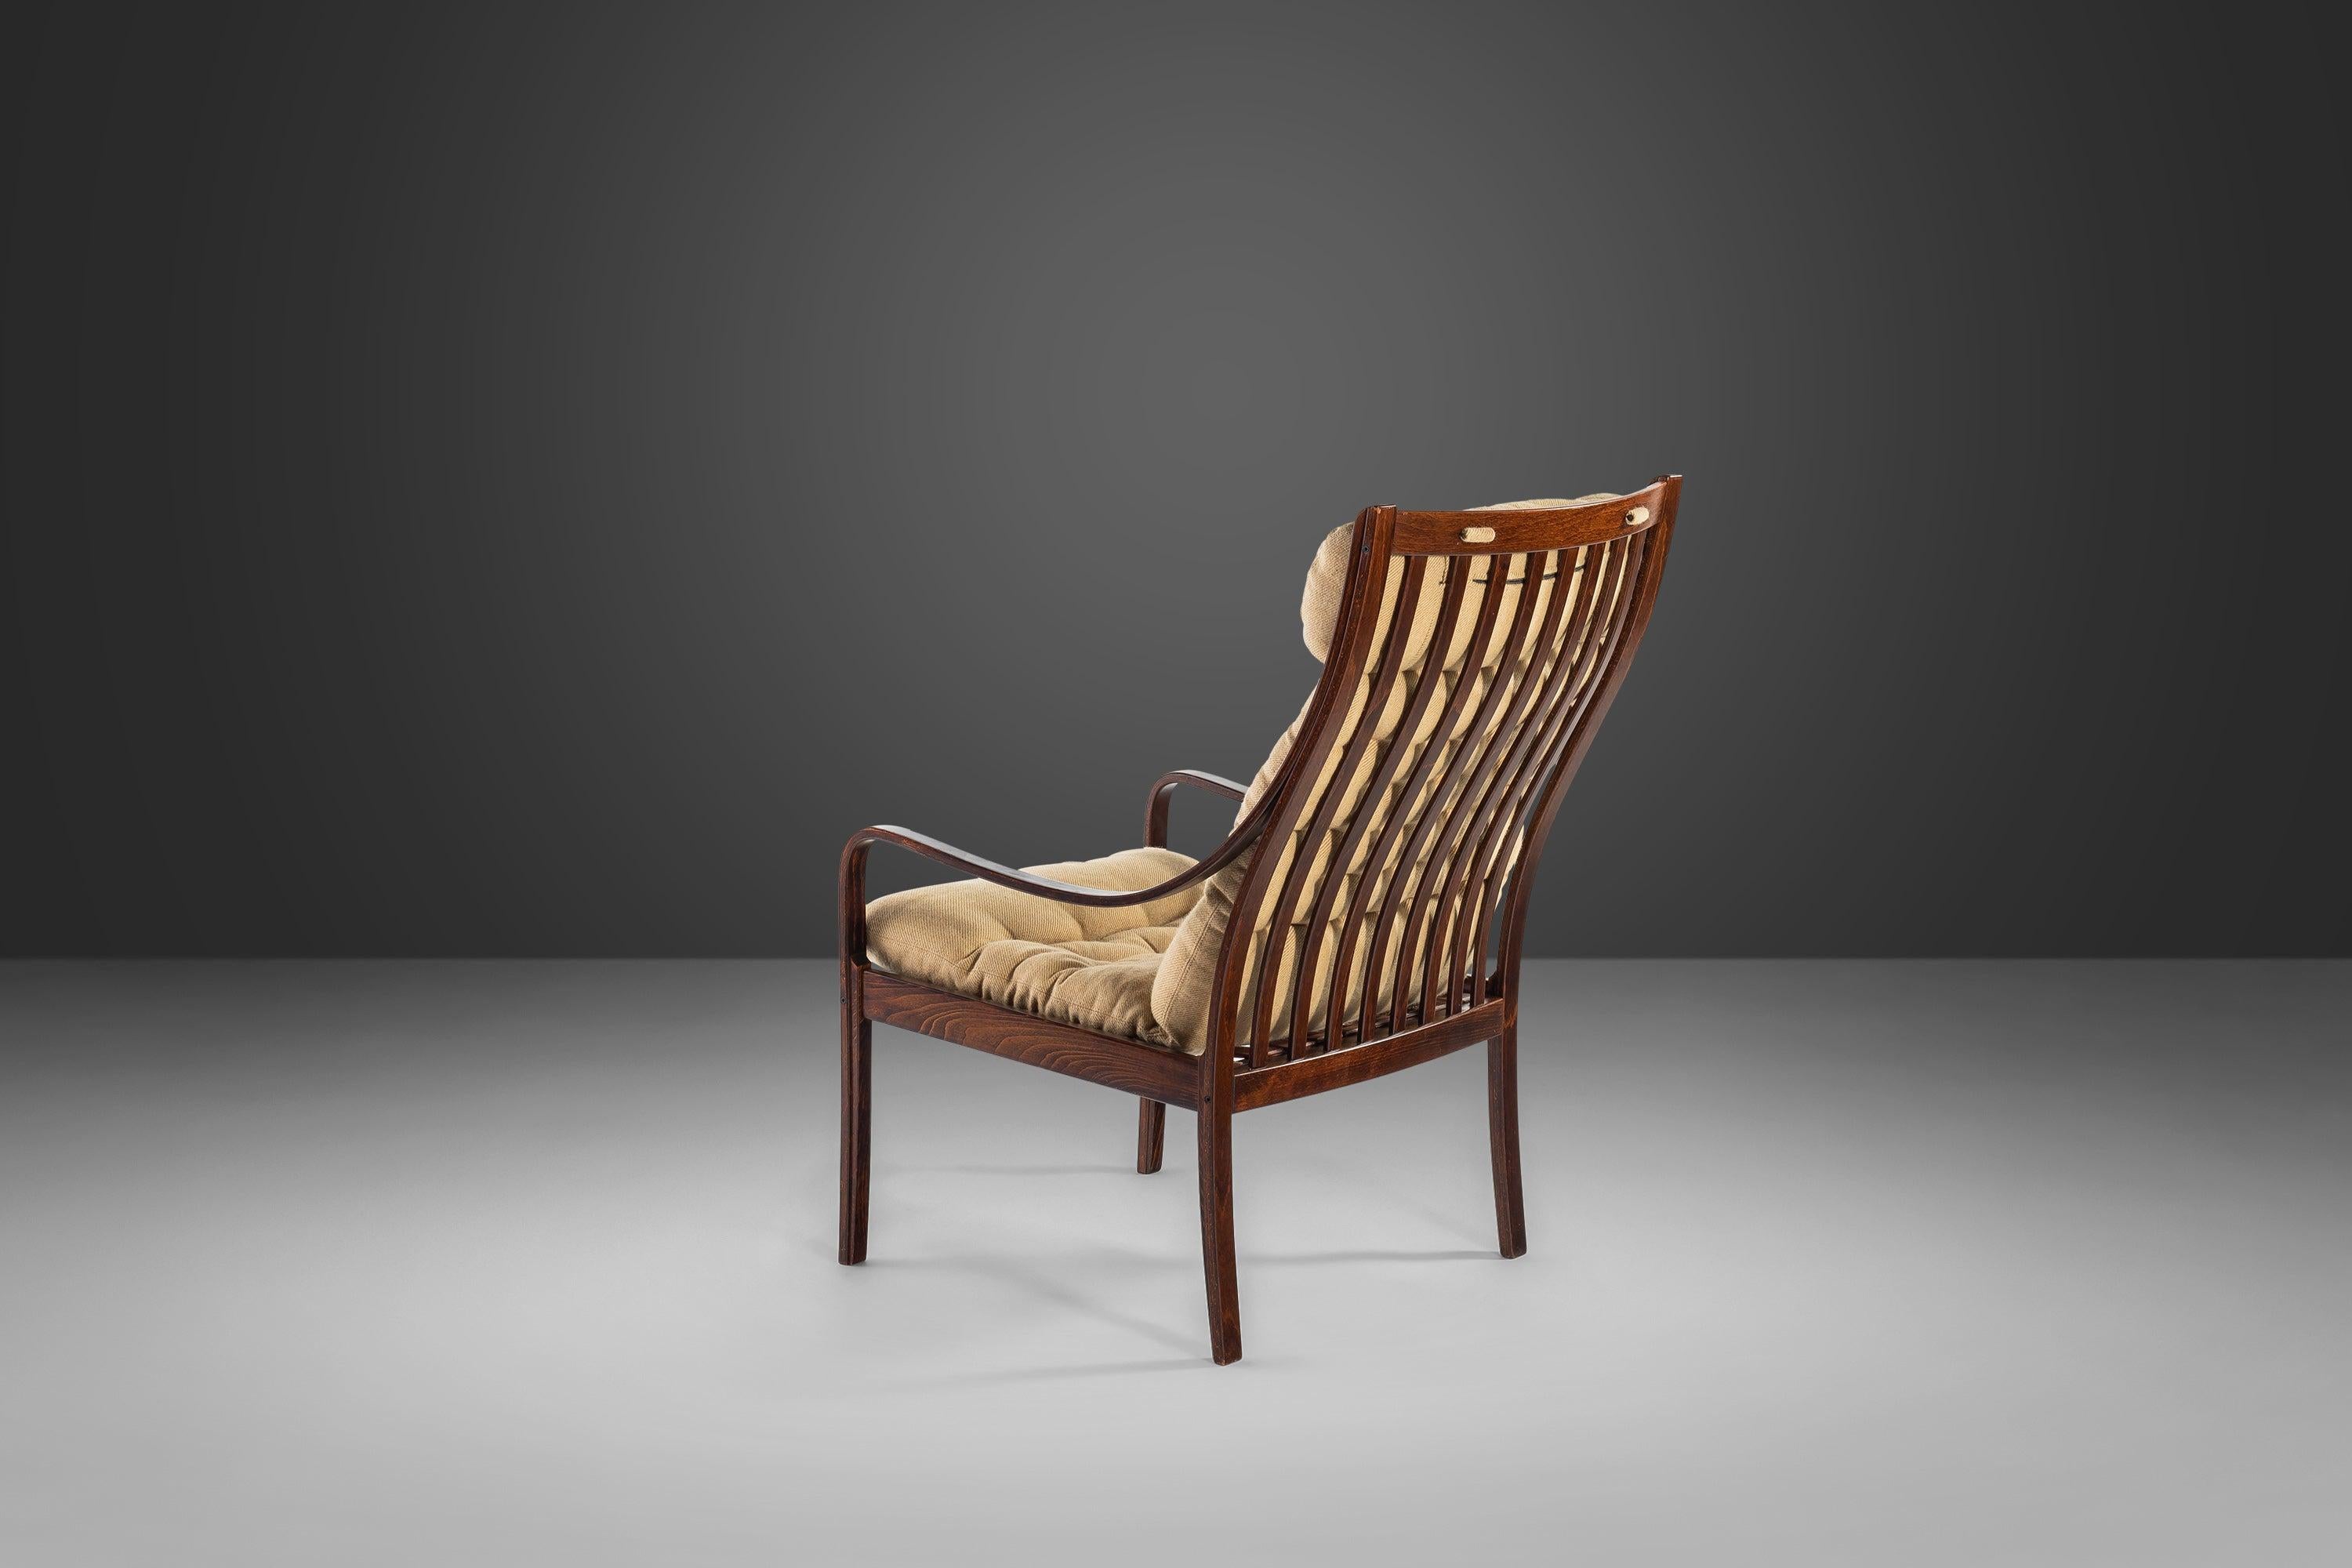 Aussi confortable qu'esthétique, cet ensemble chaise et ottoman, conçu par Fredrik A. Kayser pour Vatne Møbler, est un exemple exceptionnel du design danois en bois courbé. Condit en palissandre brésilien avec des courbes et des veinures